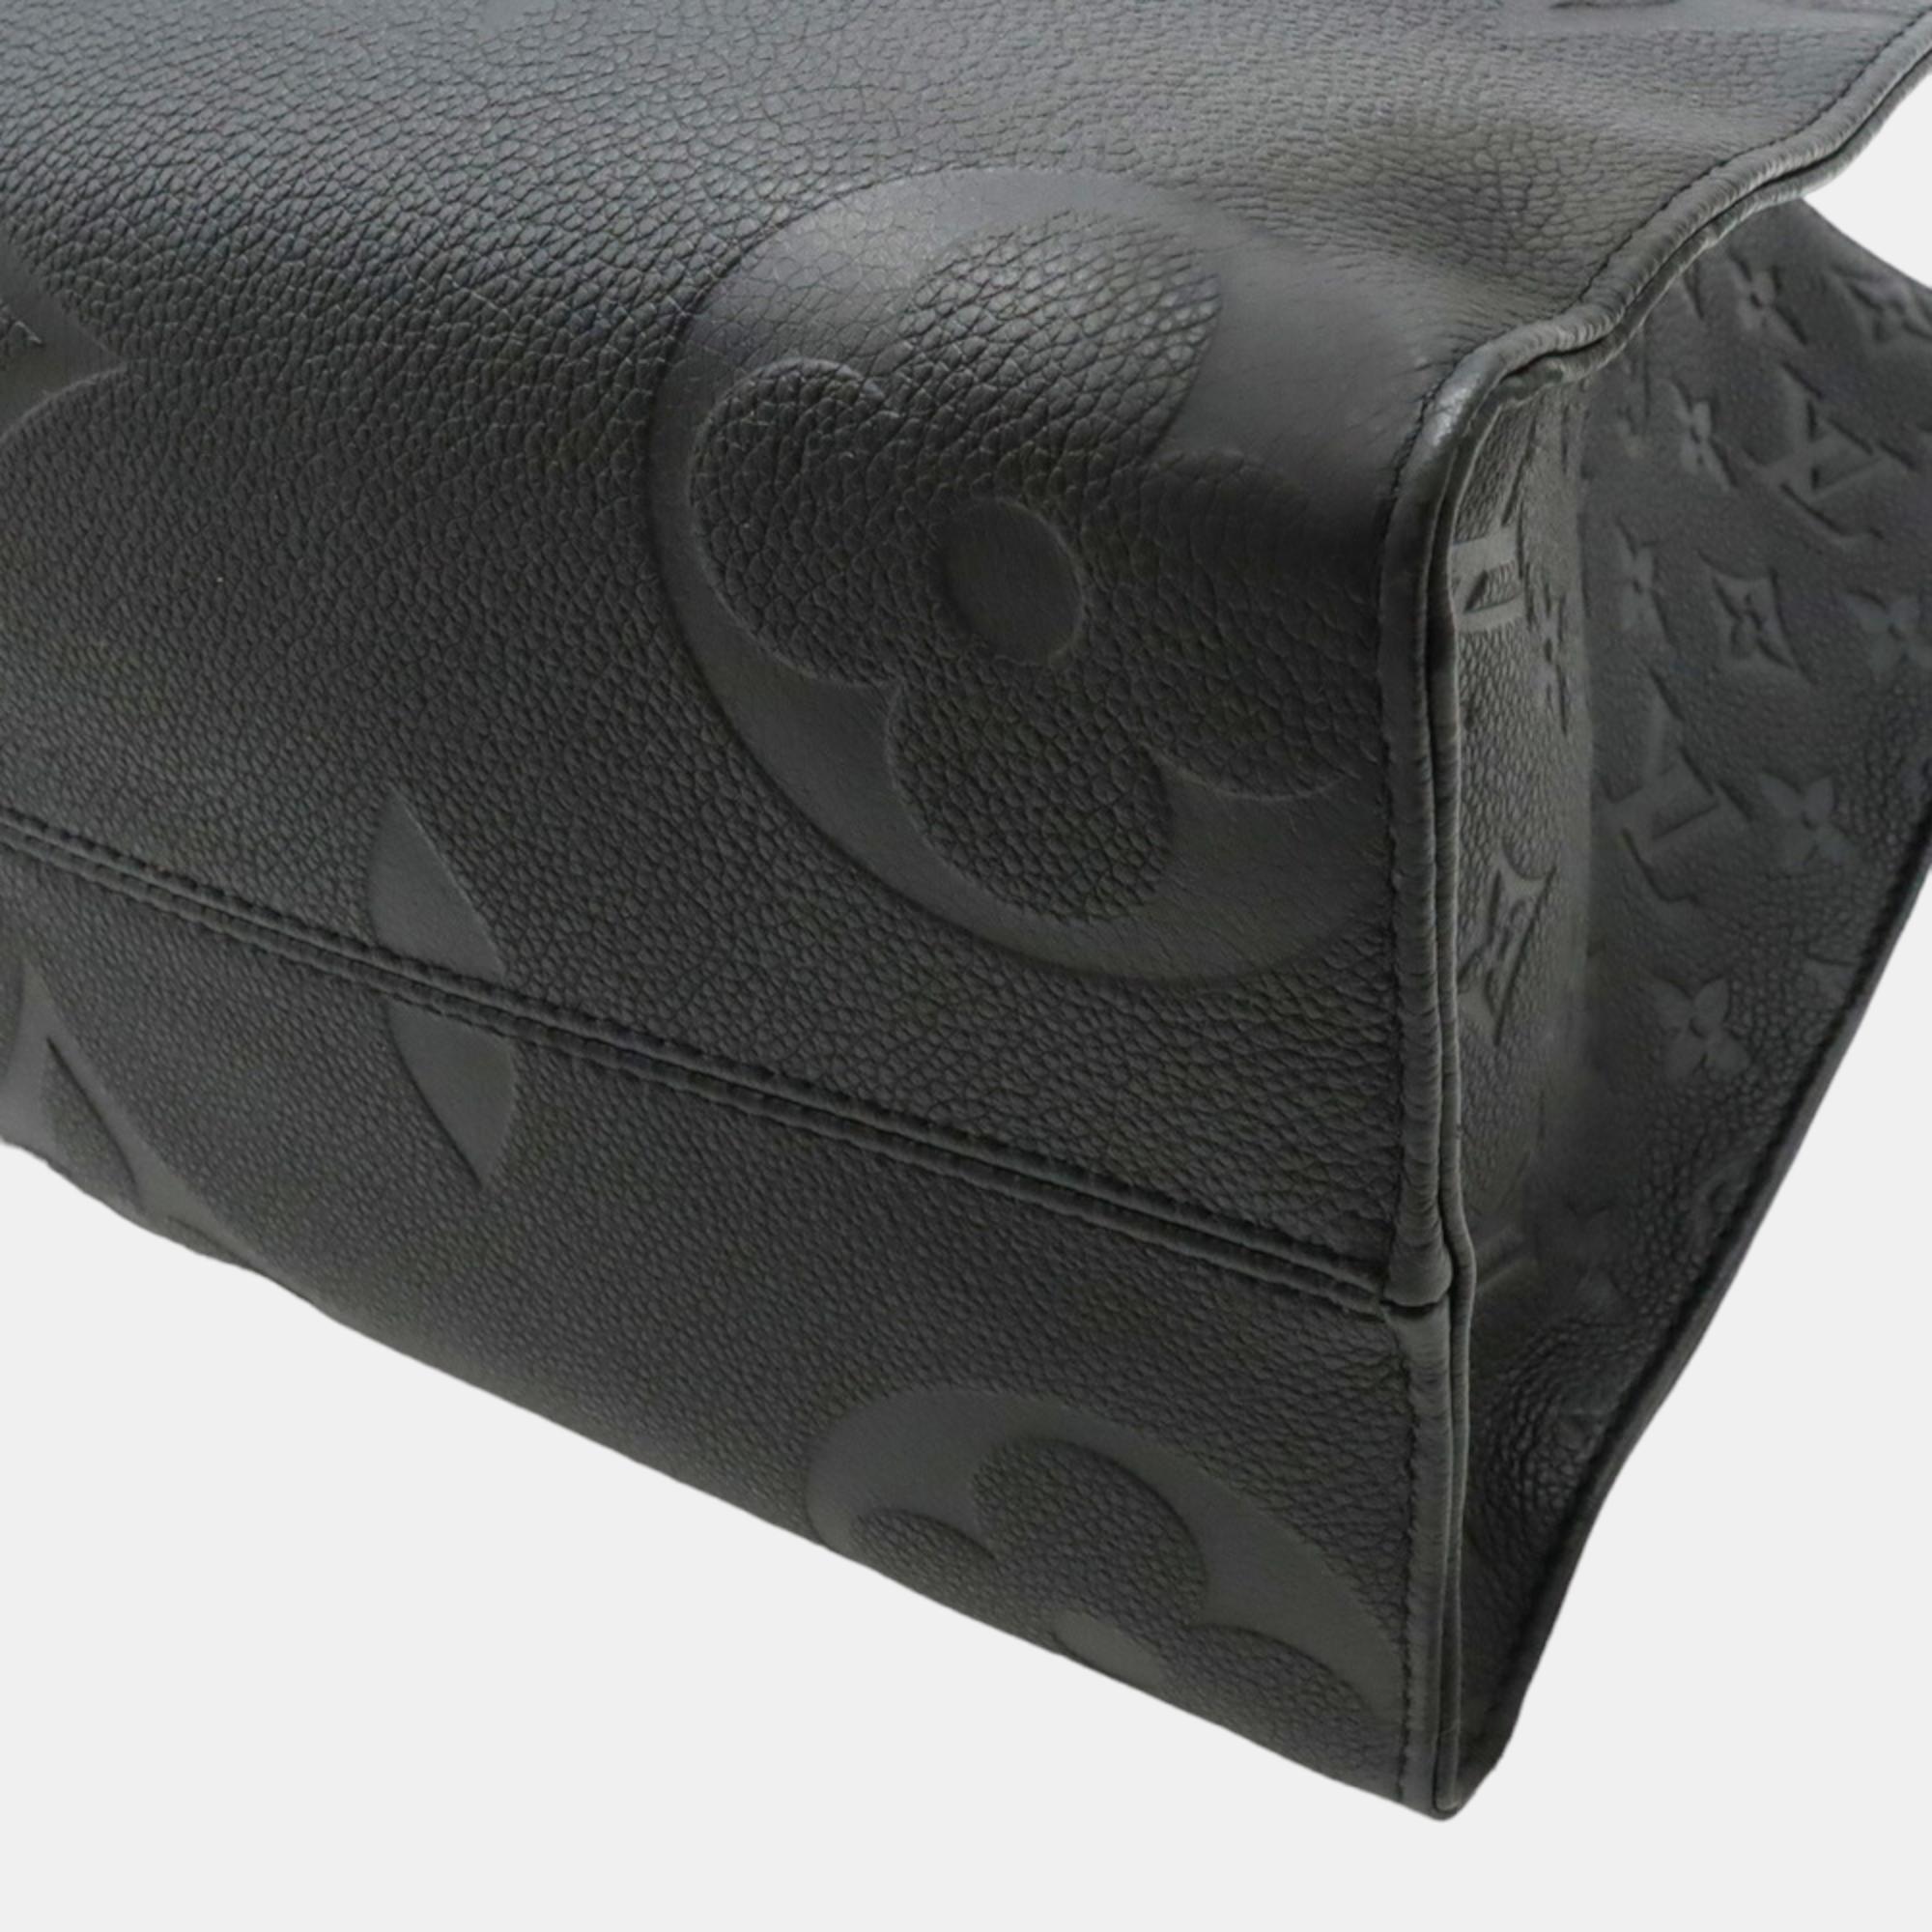 Louis Vuitton Black Monogram Giant Empreinte Leather OnTheGo MM Tote Bag